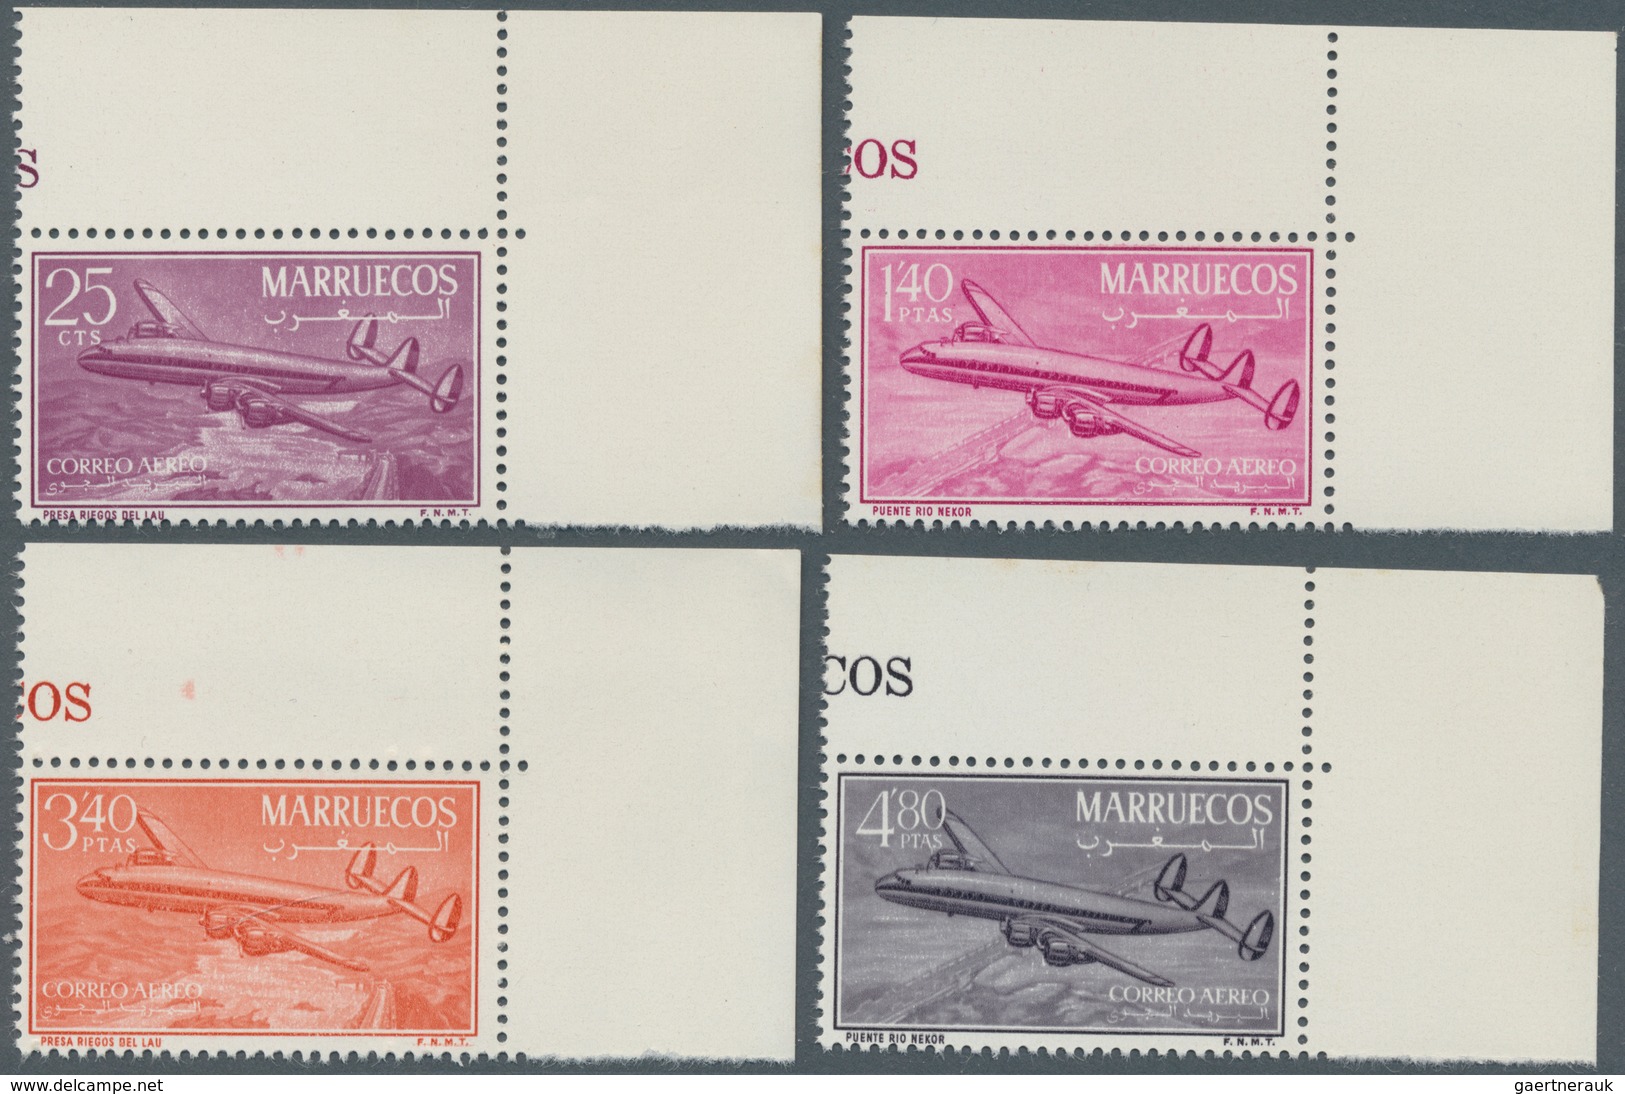 Spanisch-Marokko: NORTH ZONE: 1956, Airmail Issue ‚Lockheed Constellation‘ Complete Set Of Four In A - Maroc Espagnol